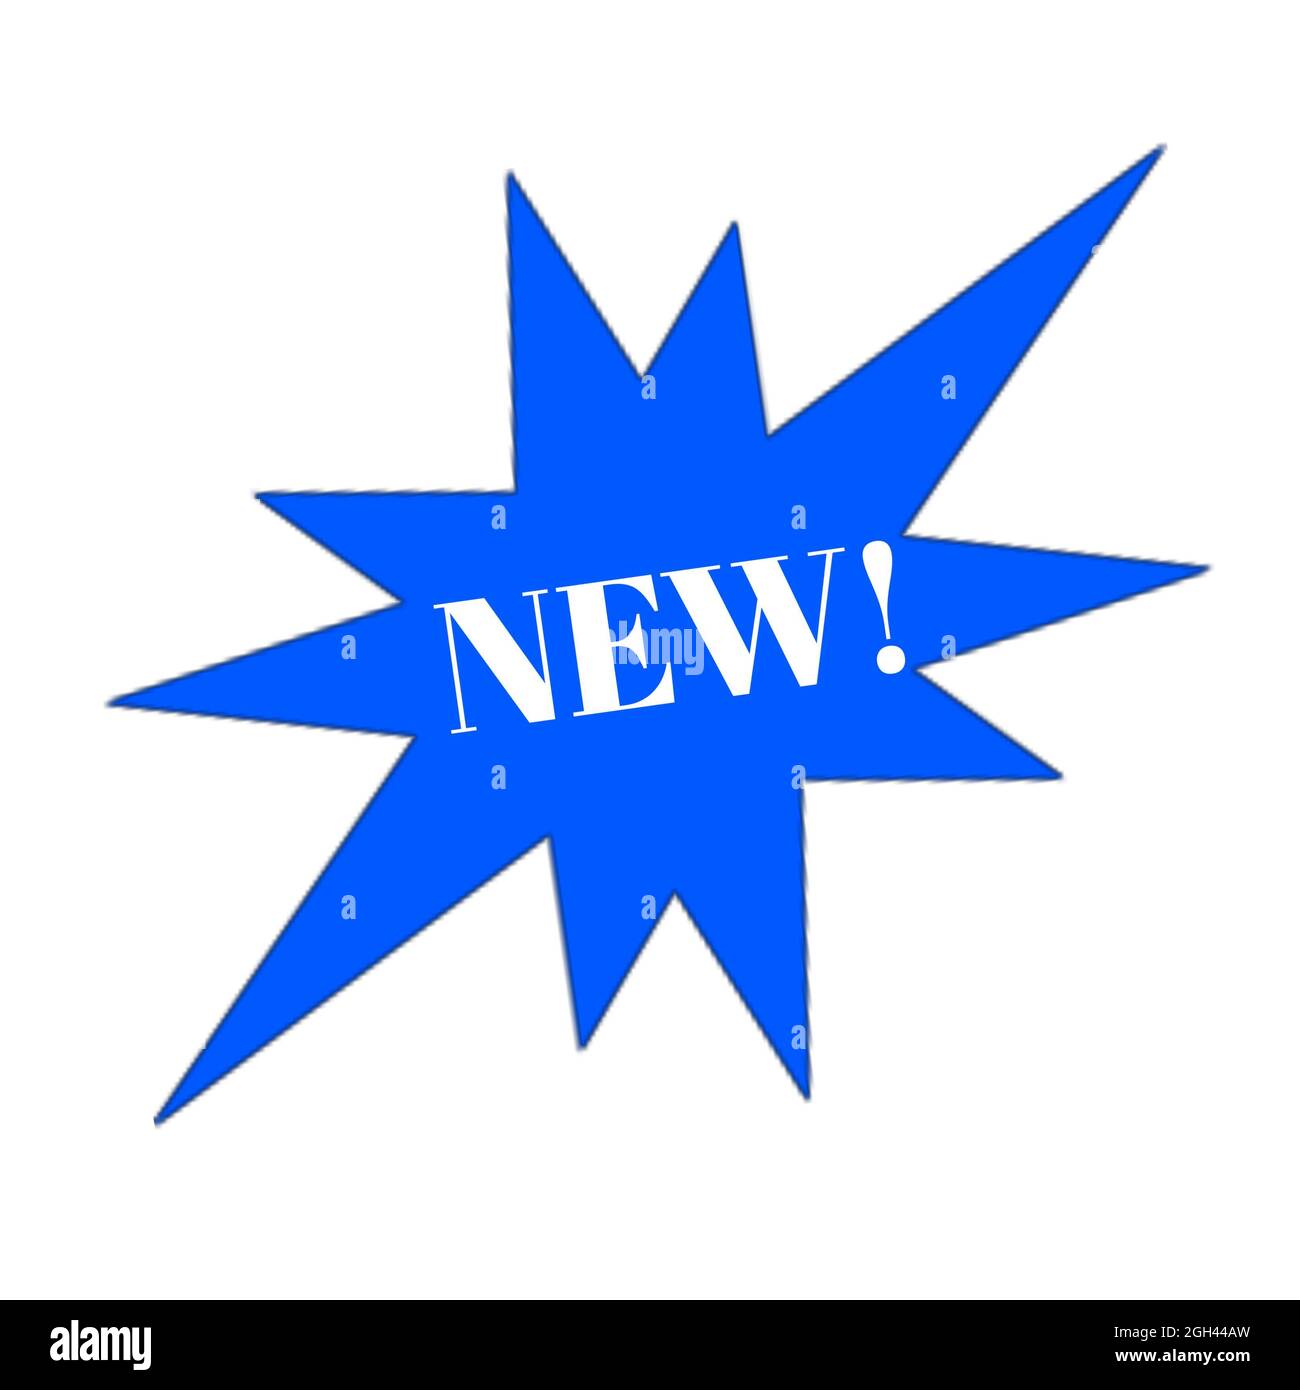 Nuova icona web starbrust blu e bianco lettere adesivo 3d sfondo bianco Foto Stock